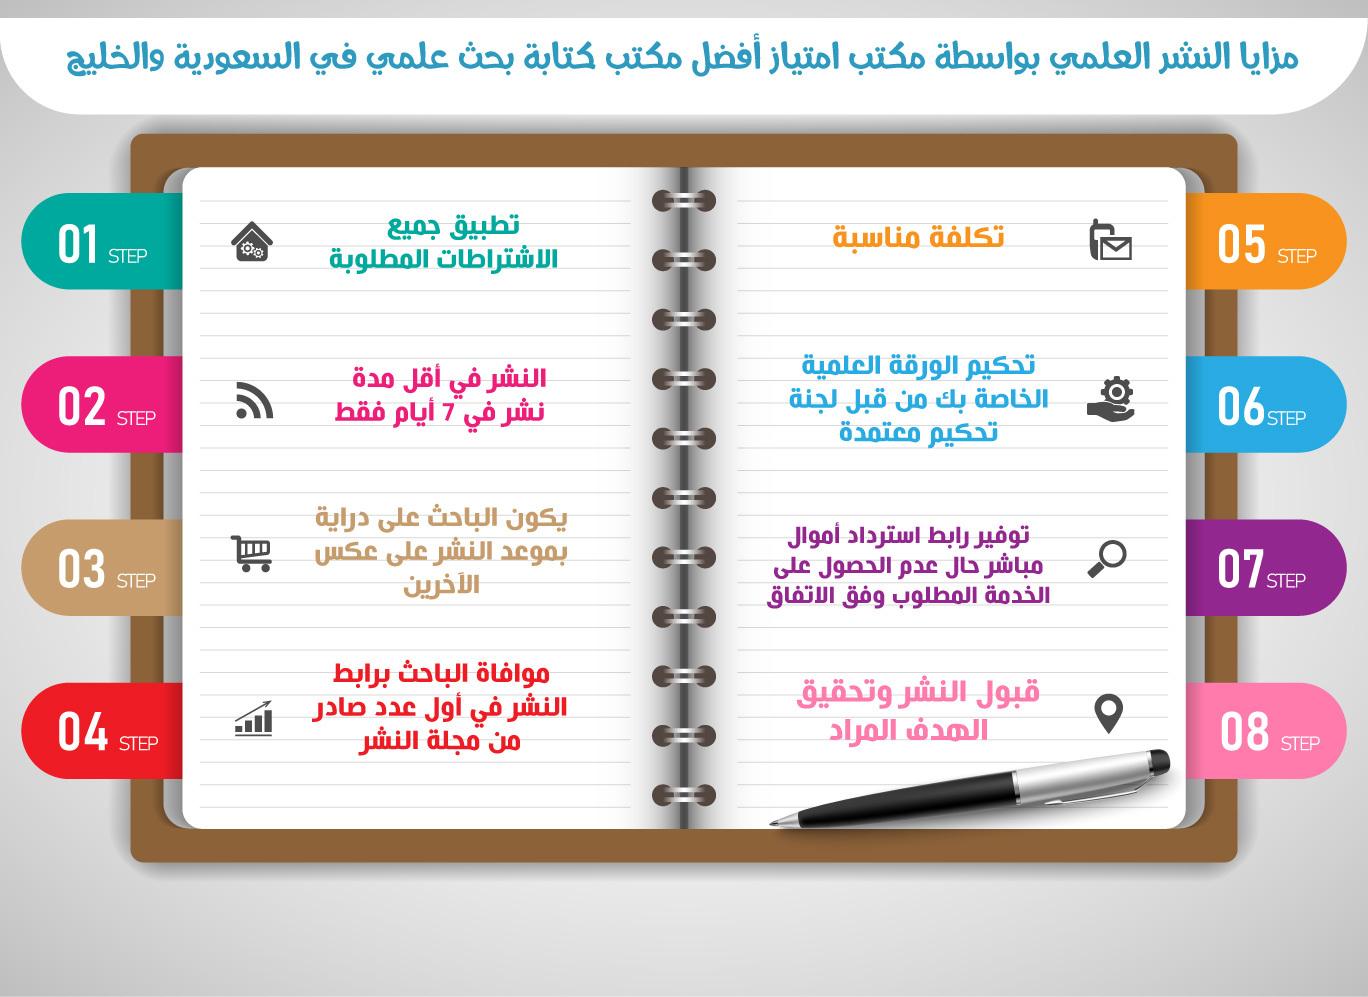 مزايا النشر العلمي بواسطة مكتب امتياز أفضل مكتب كتابة بحث علمي في السعودية والخليج.